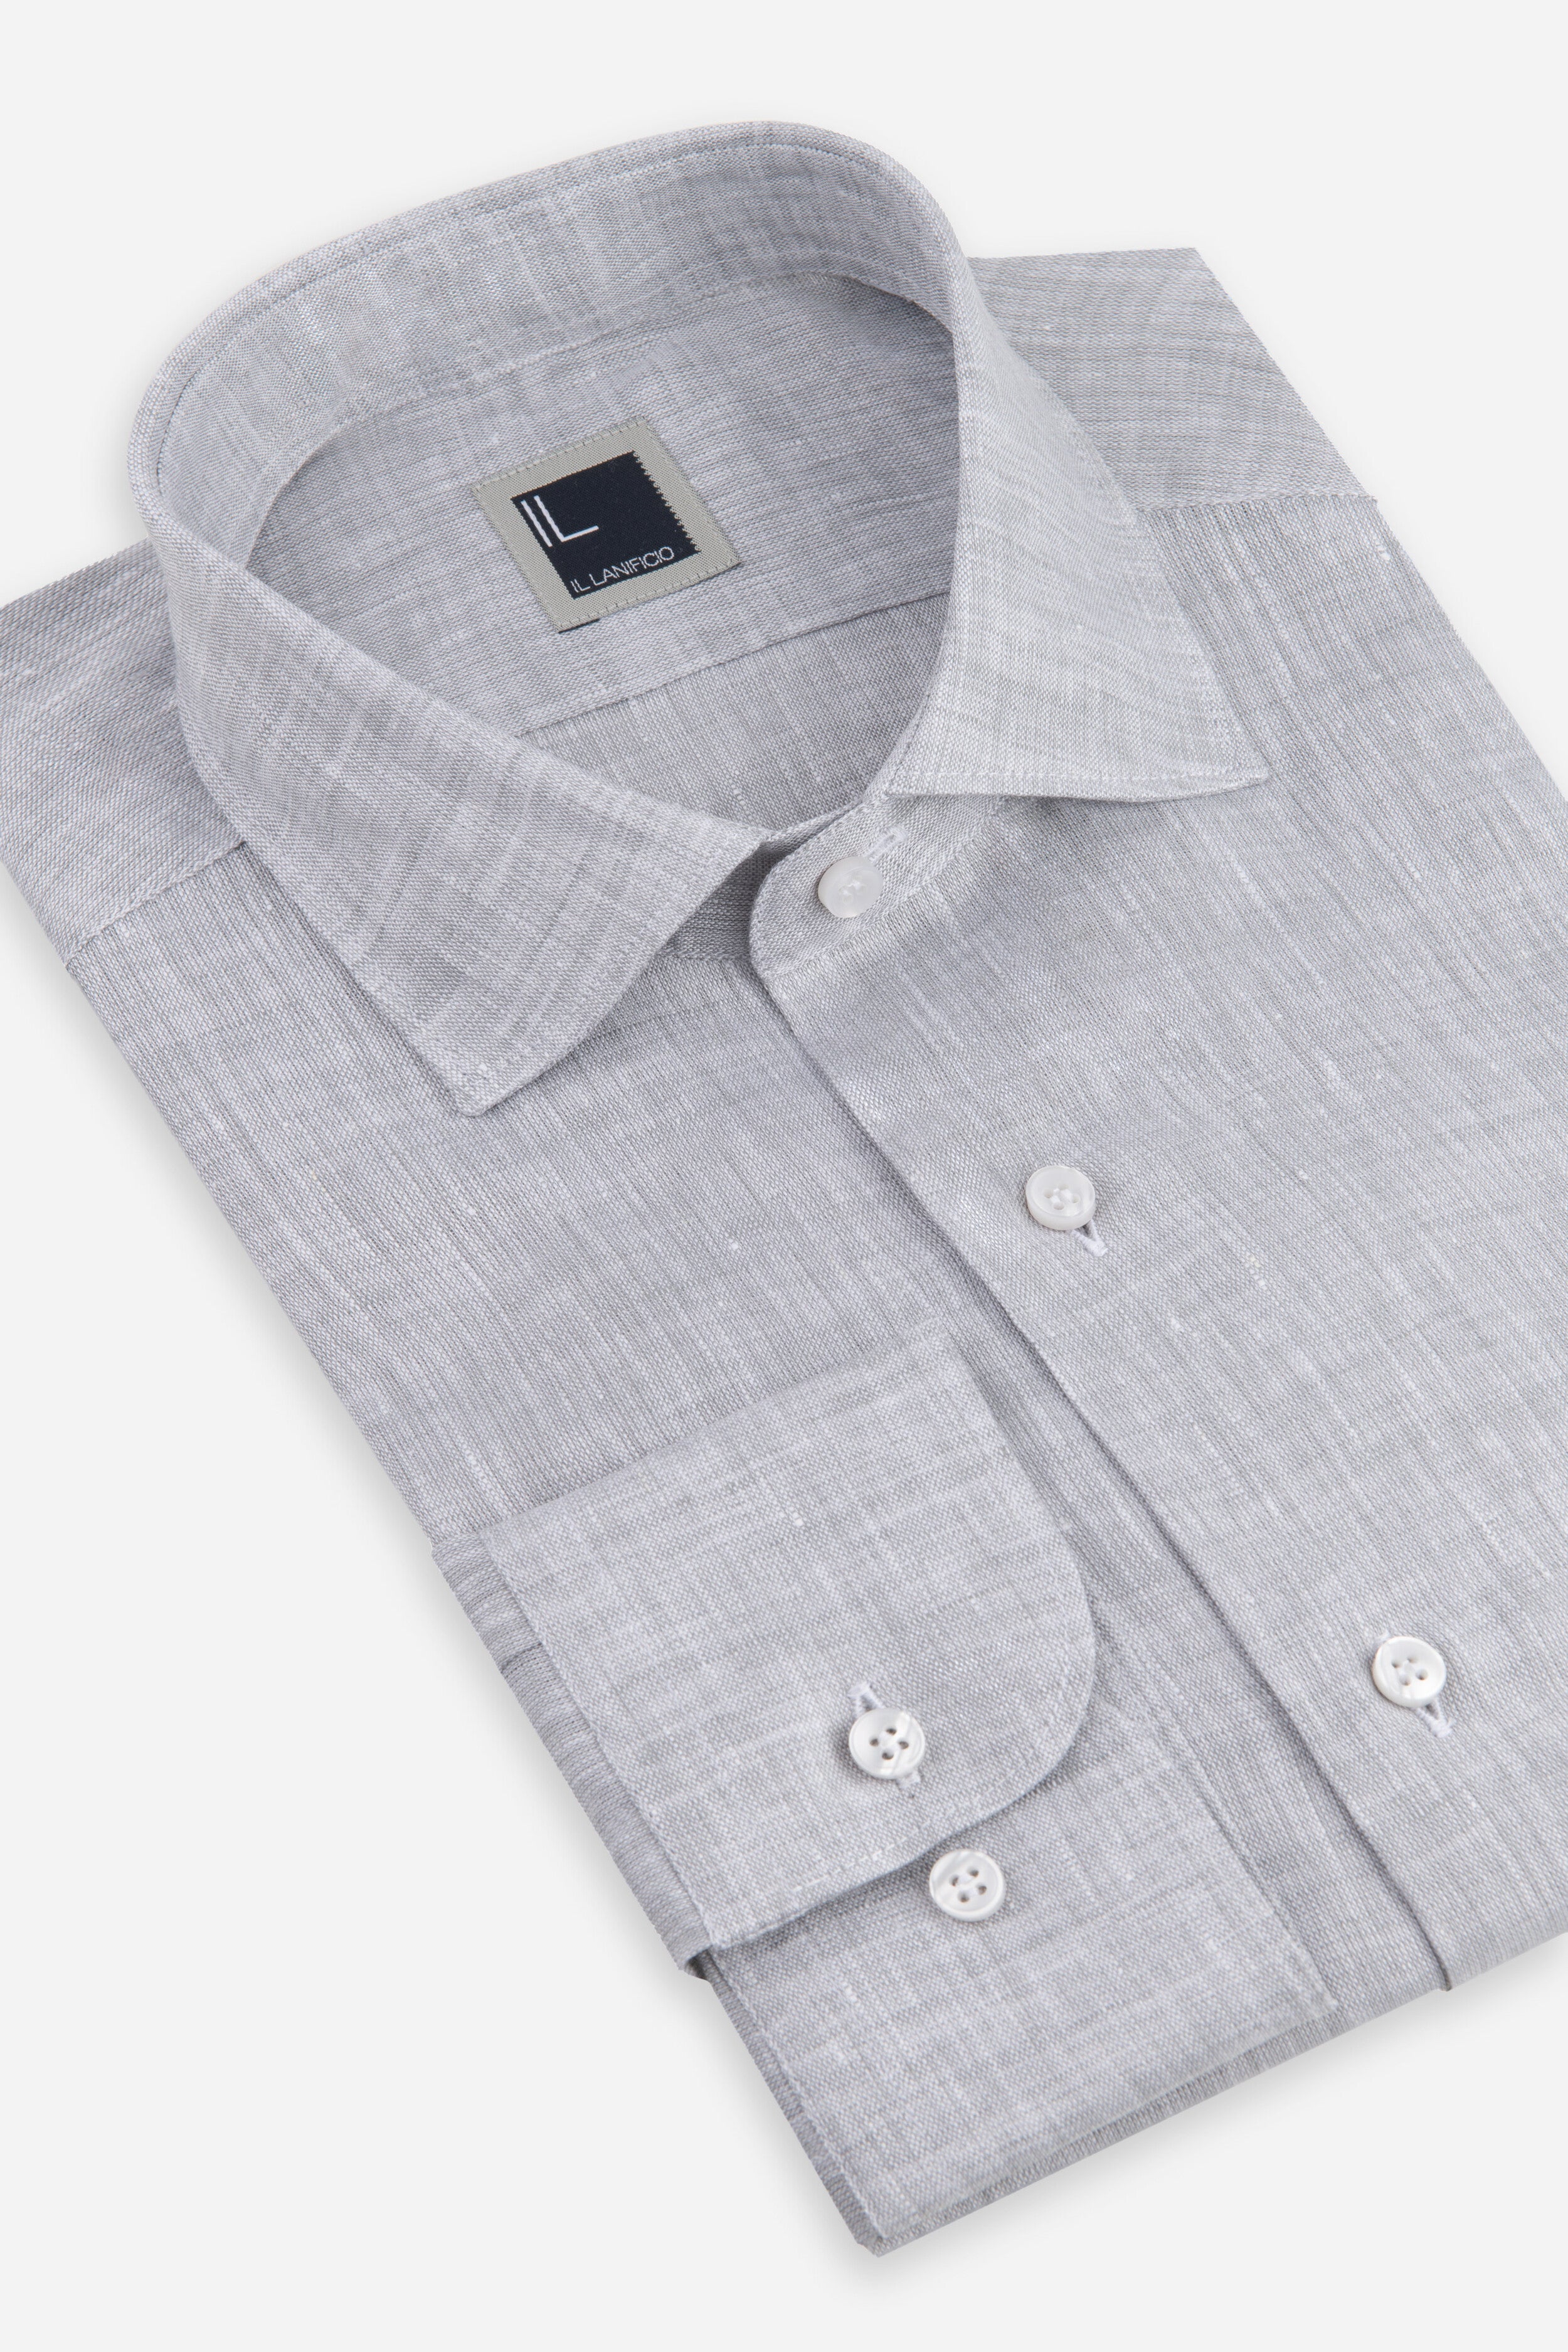 Men’s linen shirt - GREY